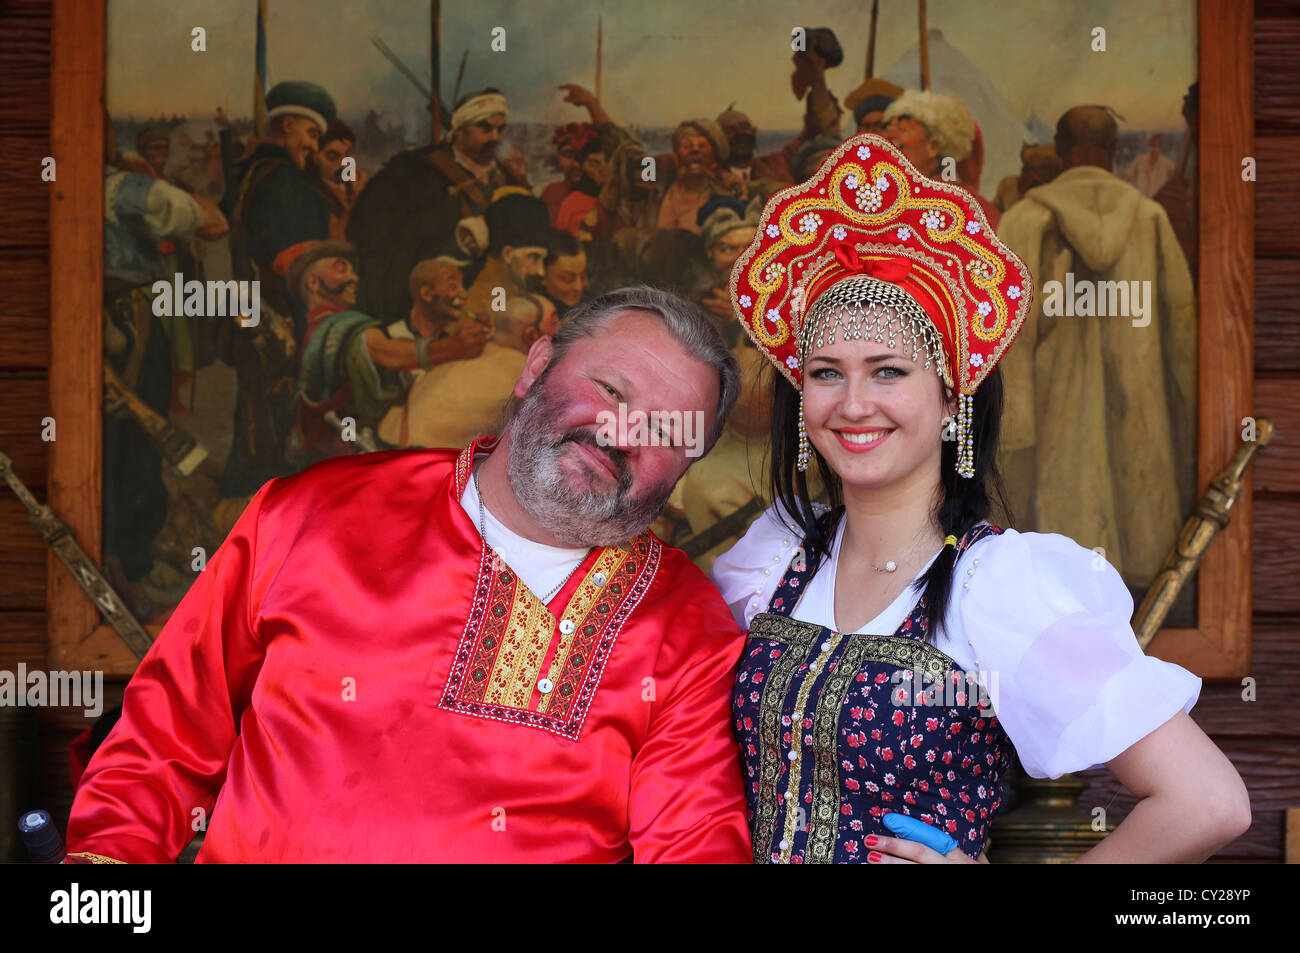 Ukrainische Volk ukrainischen traditionelle Kleidung enthält Elemente des  ukrainischen ethnischen Stickerei Stockfotografie - Alamy